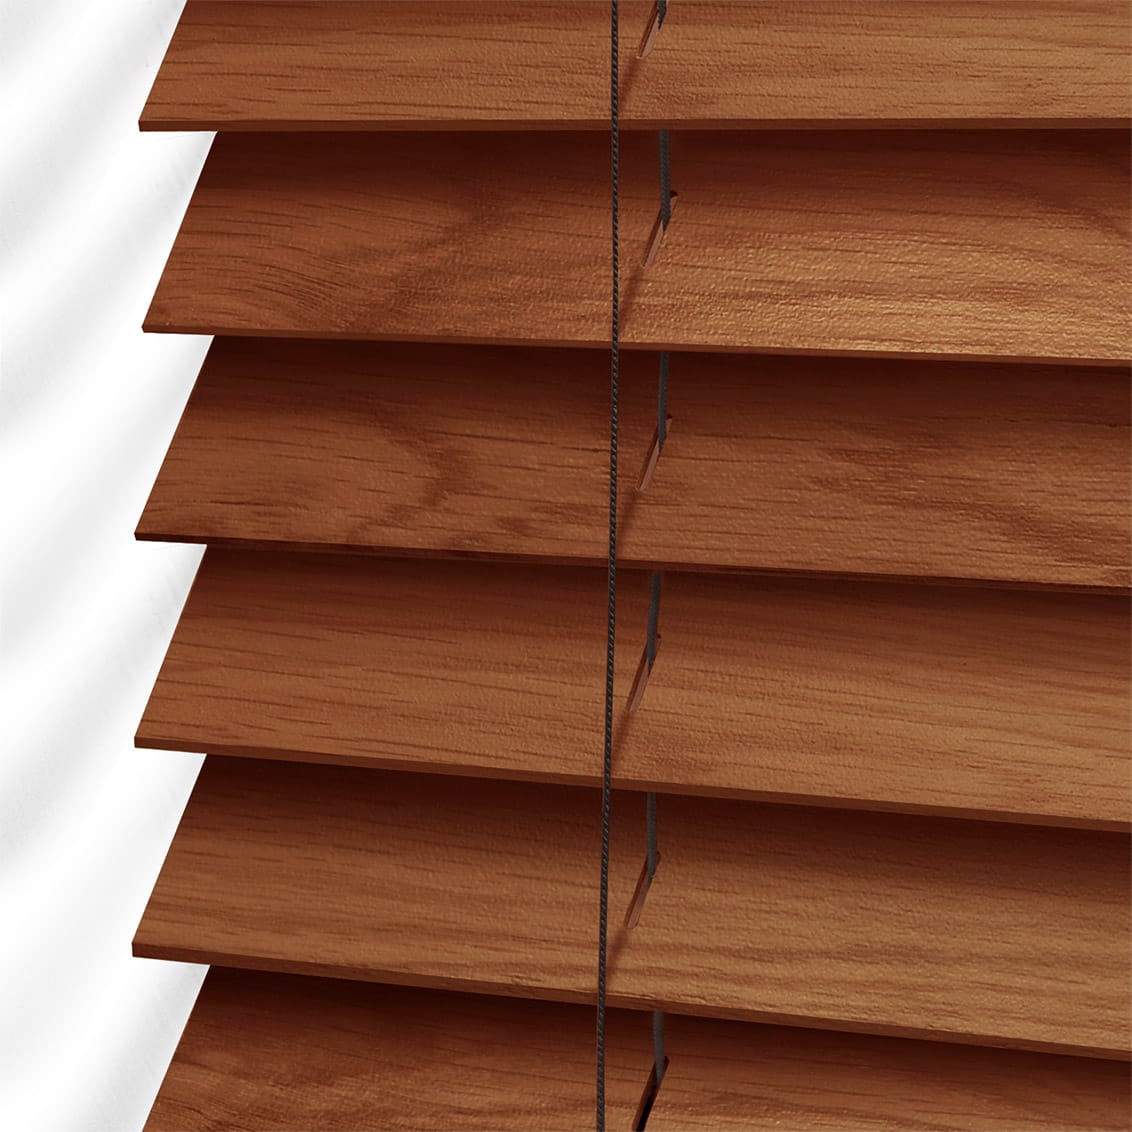 Rèm gỗ cao cấp với hệ thống cố định chắc chắn